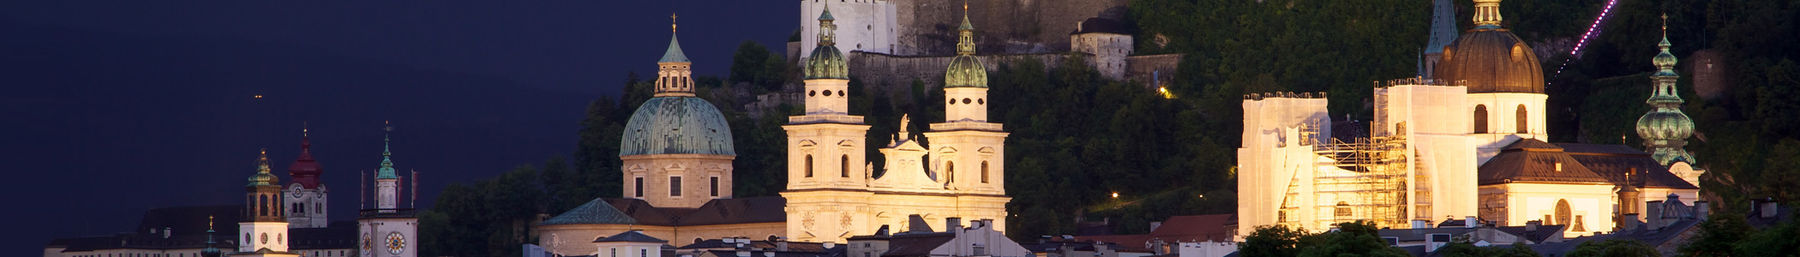 Salzburg banner.jpg